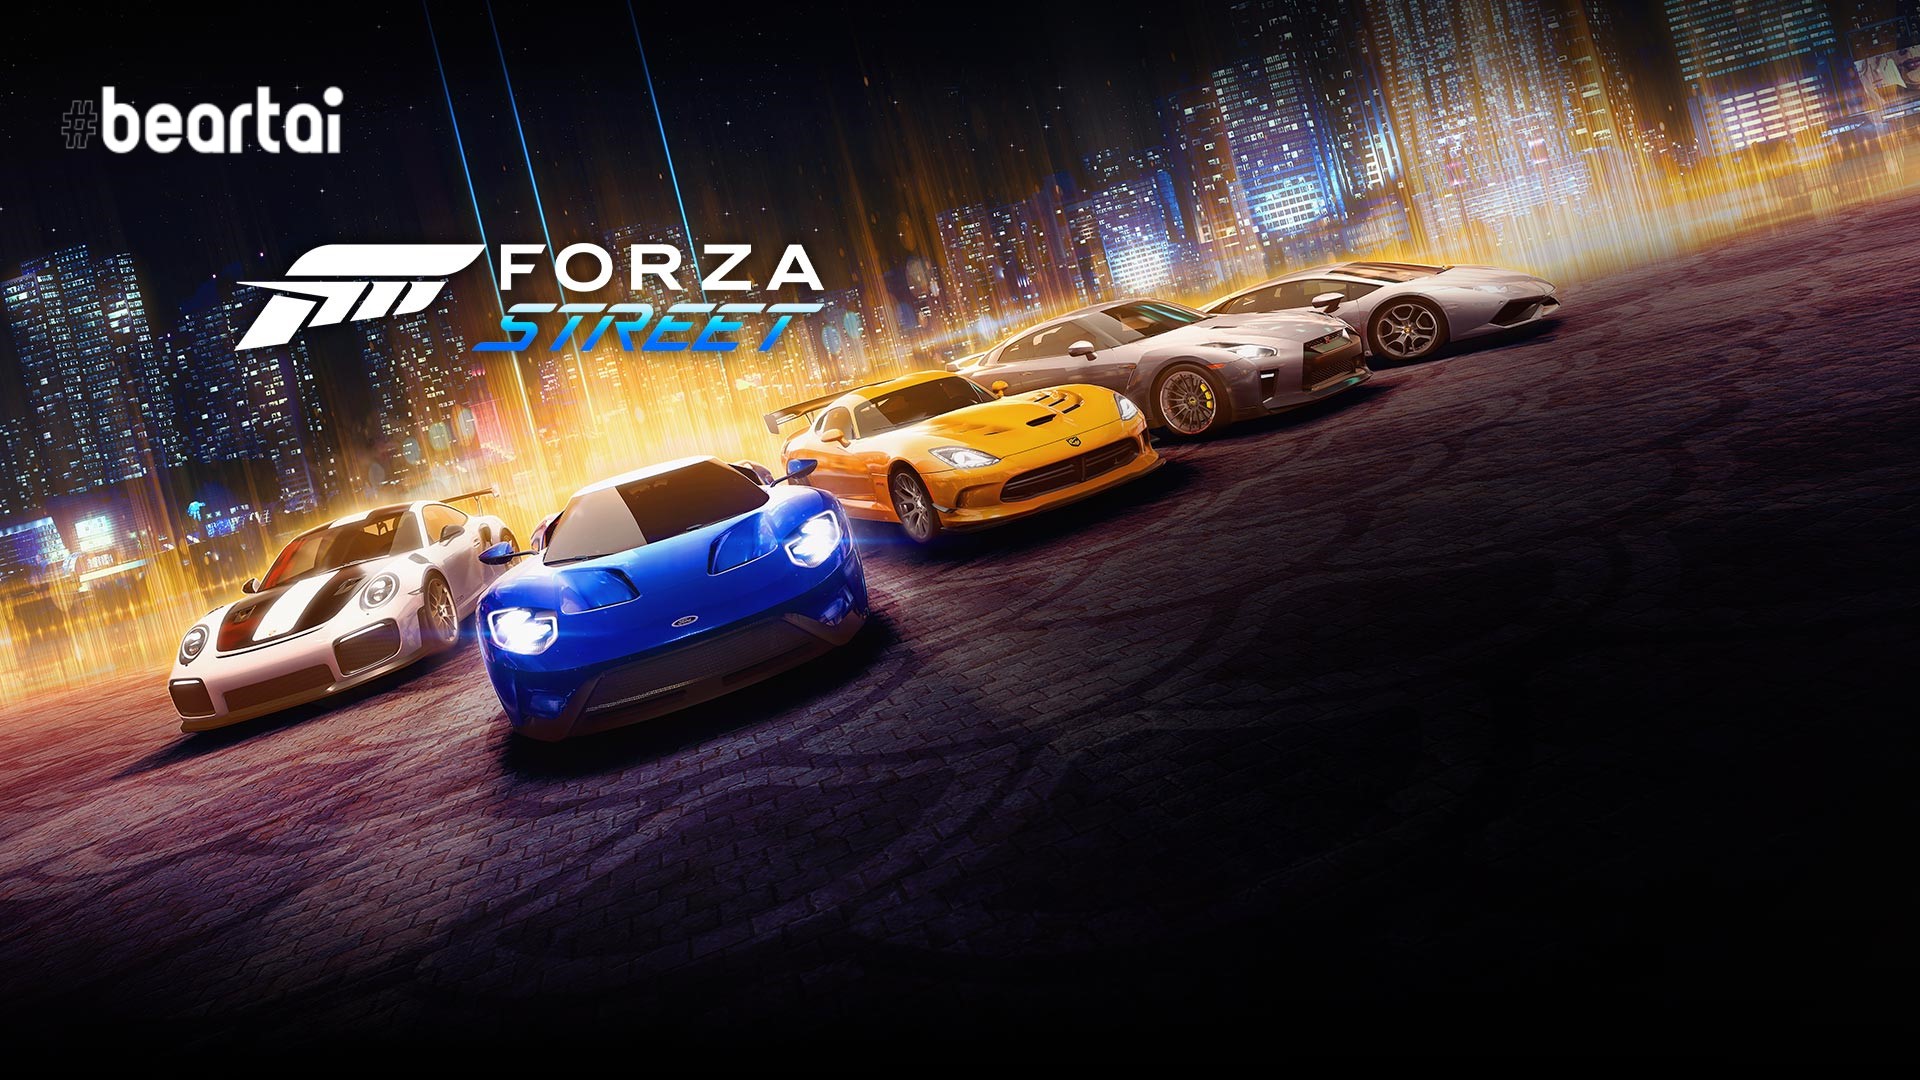 เกมแข่งรถ Forza Street เปิดให้เล่นฟรีบนสมาร์ตโฟน Android และ iOS ได้แล้วนะ